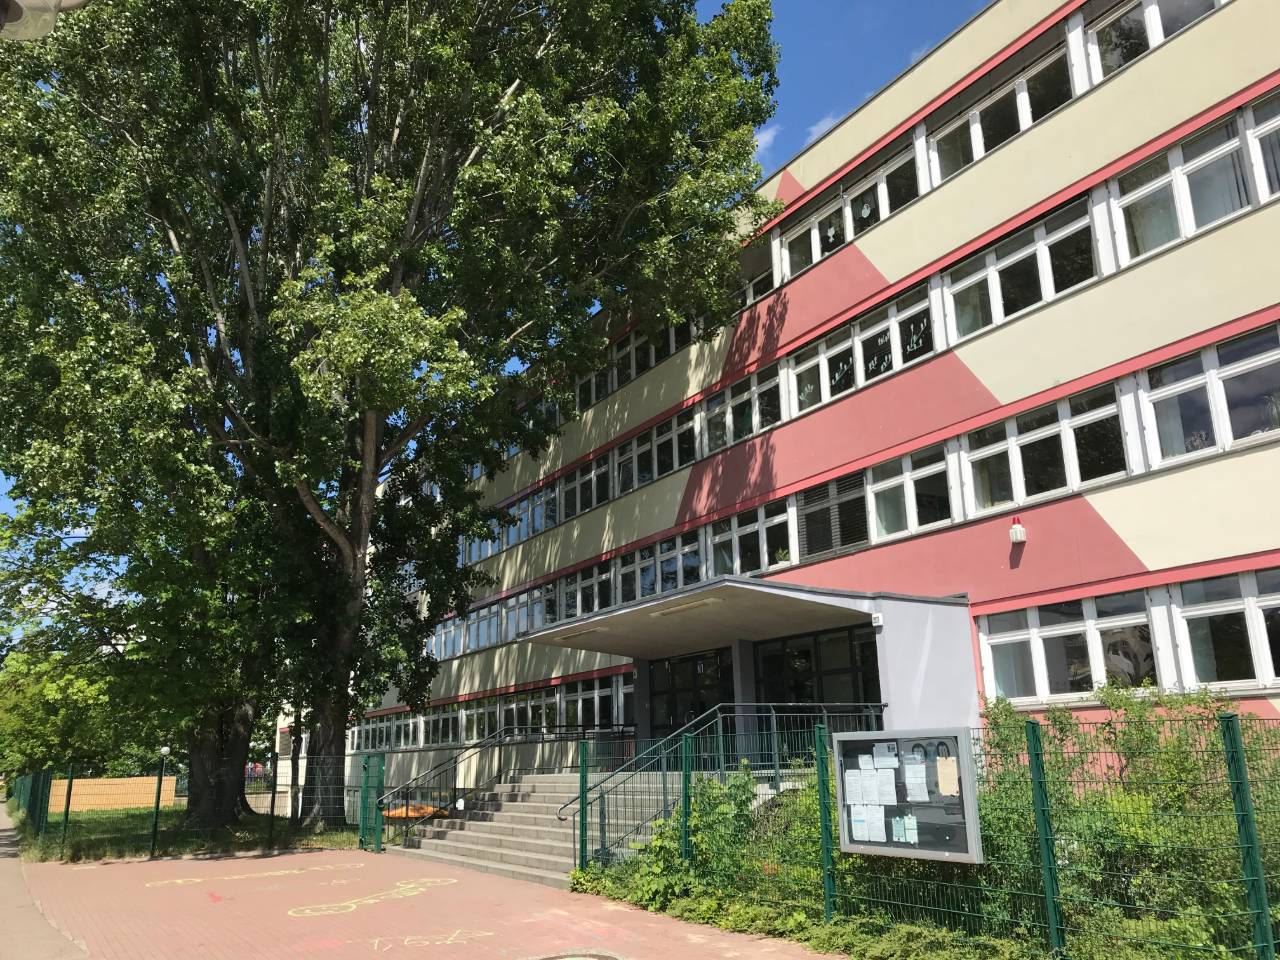 Der Schuleingang an der Vorderseite des Gebäudes an einem sonnigen Sommertag.